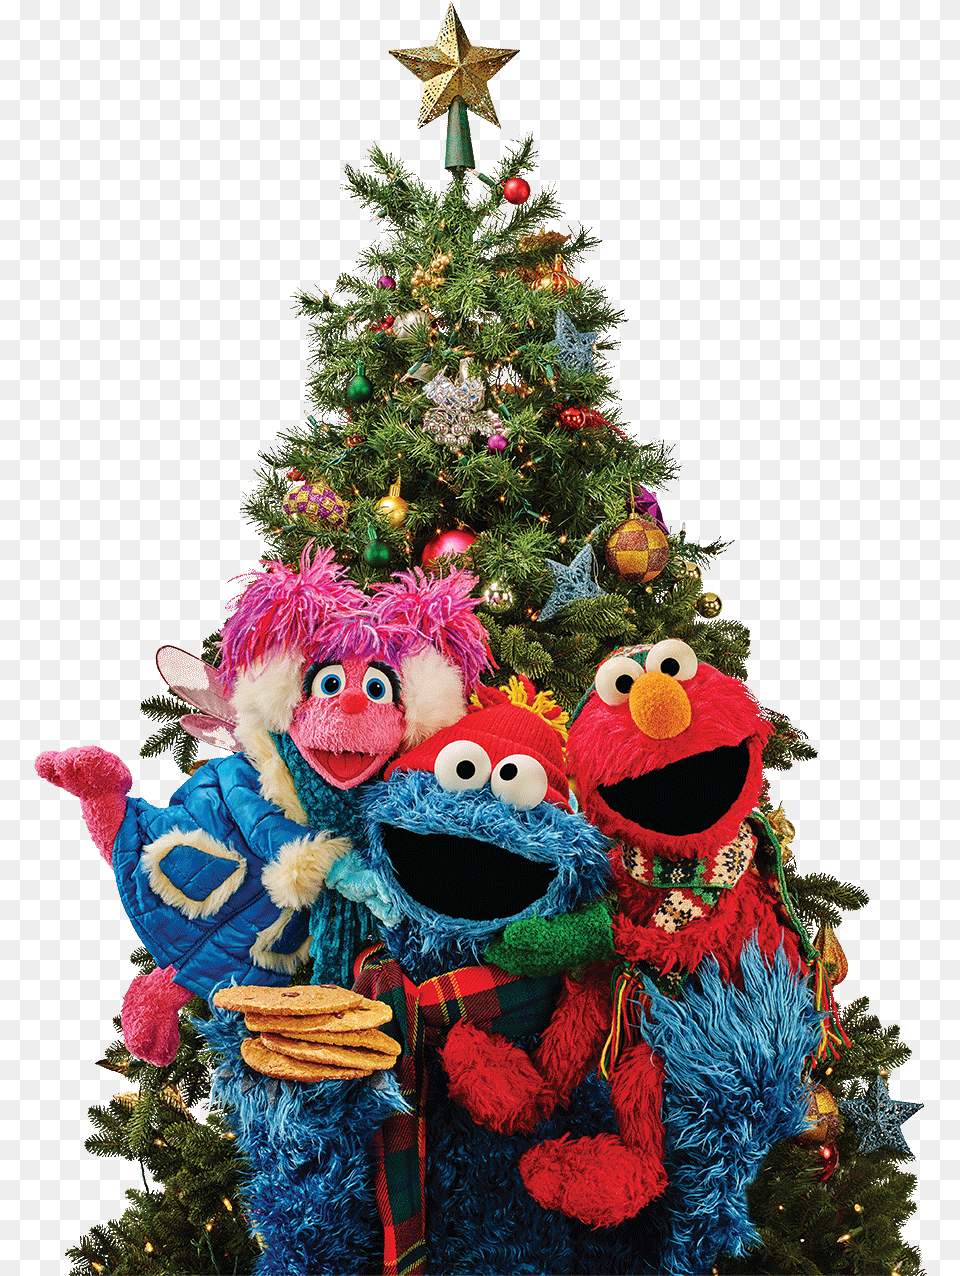 Christmas Tree Ornament Elmo Pbs Christmas Tree Christmas Tree, Christmas Decorations, Festival, Plant, Christmas Tree Free Png